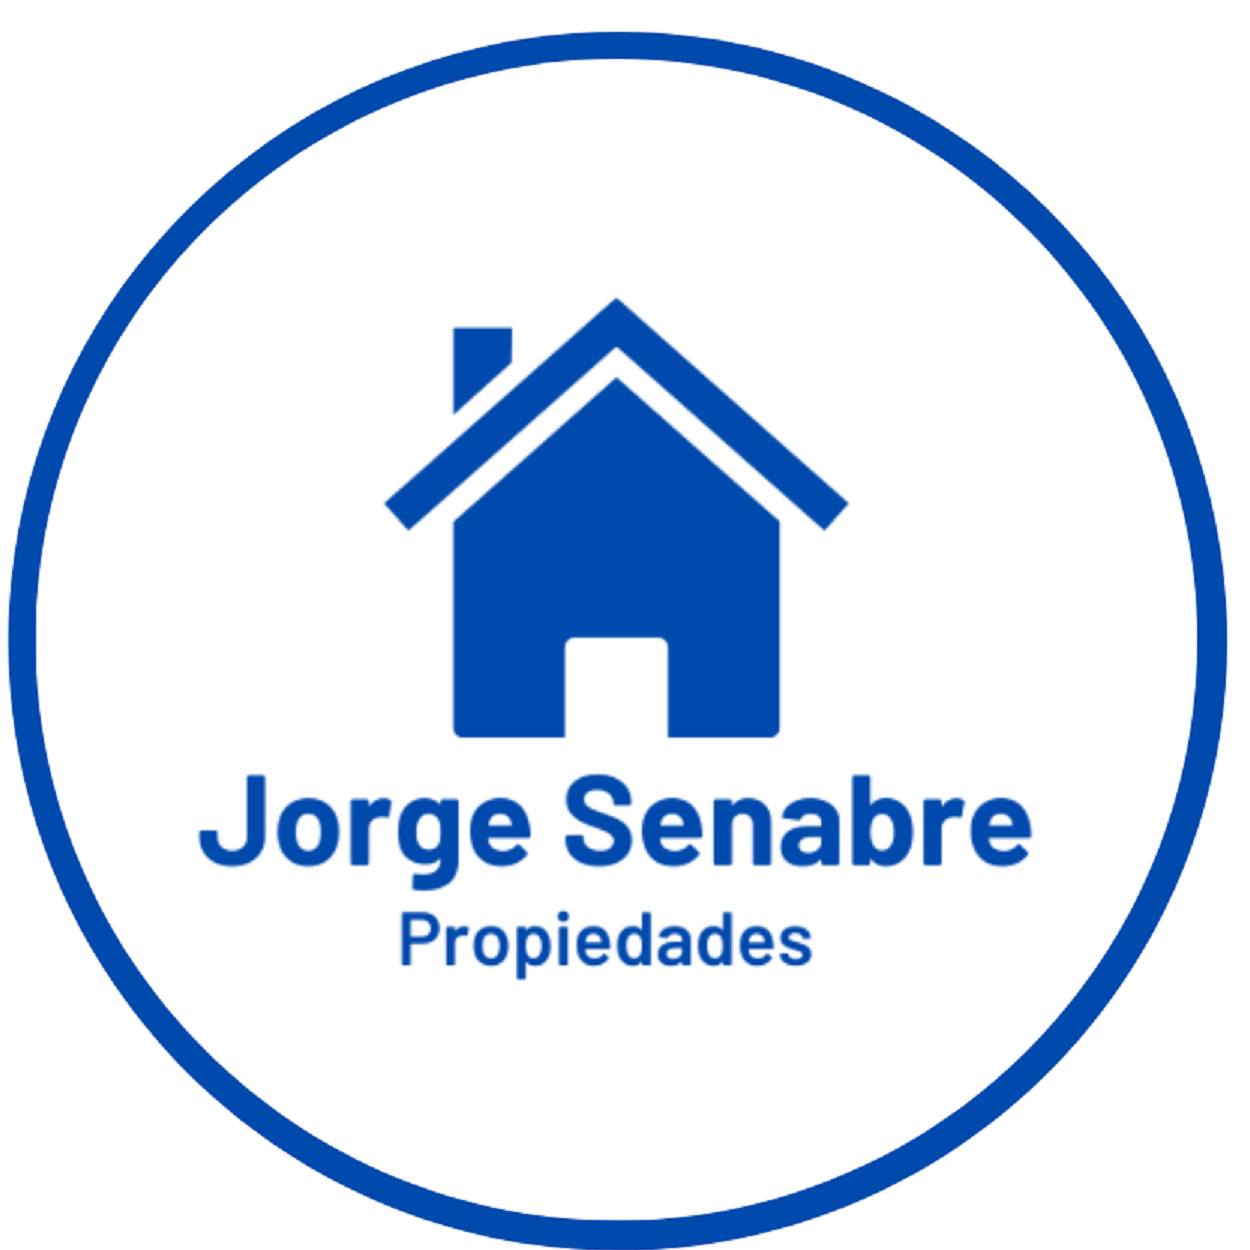 Jorge Senabre Propiedades